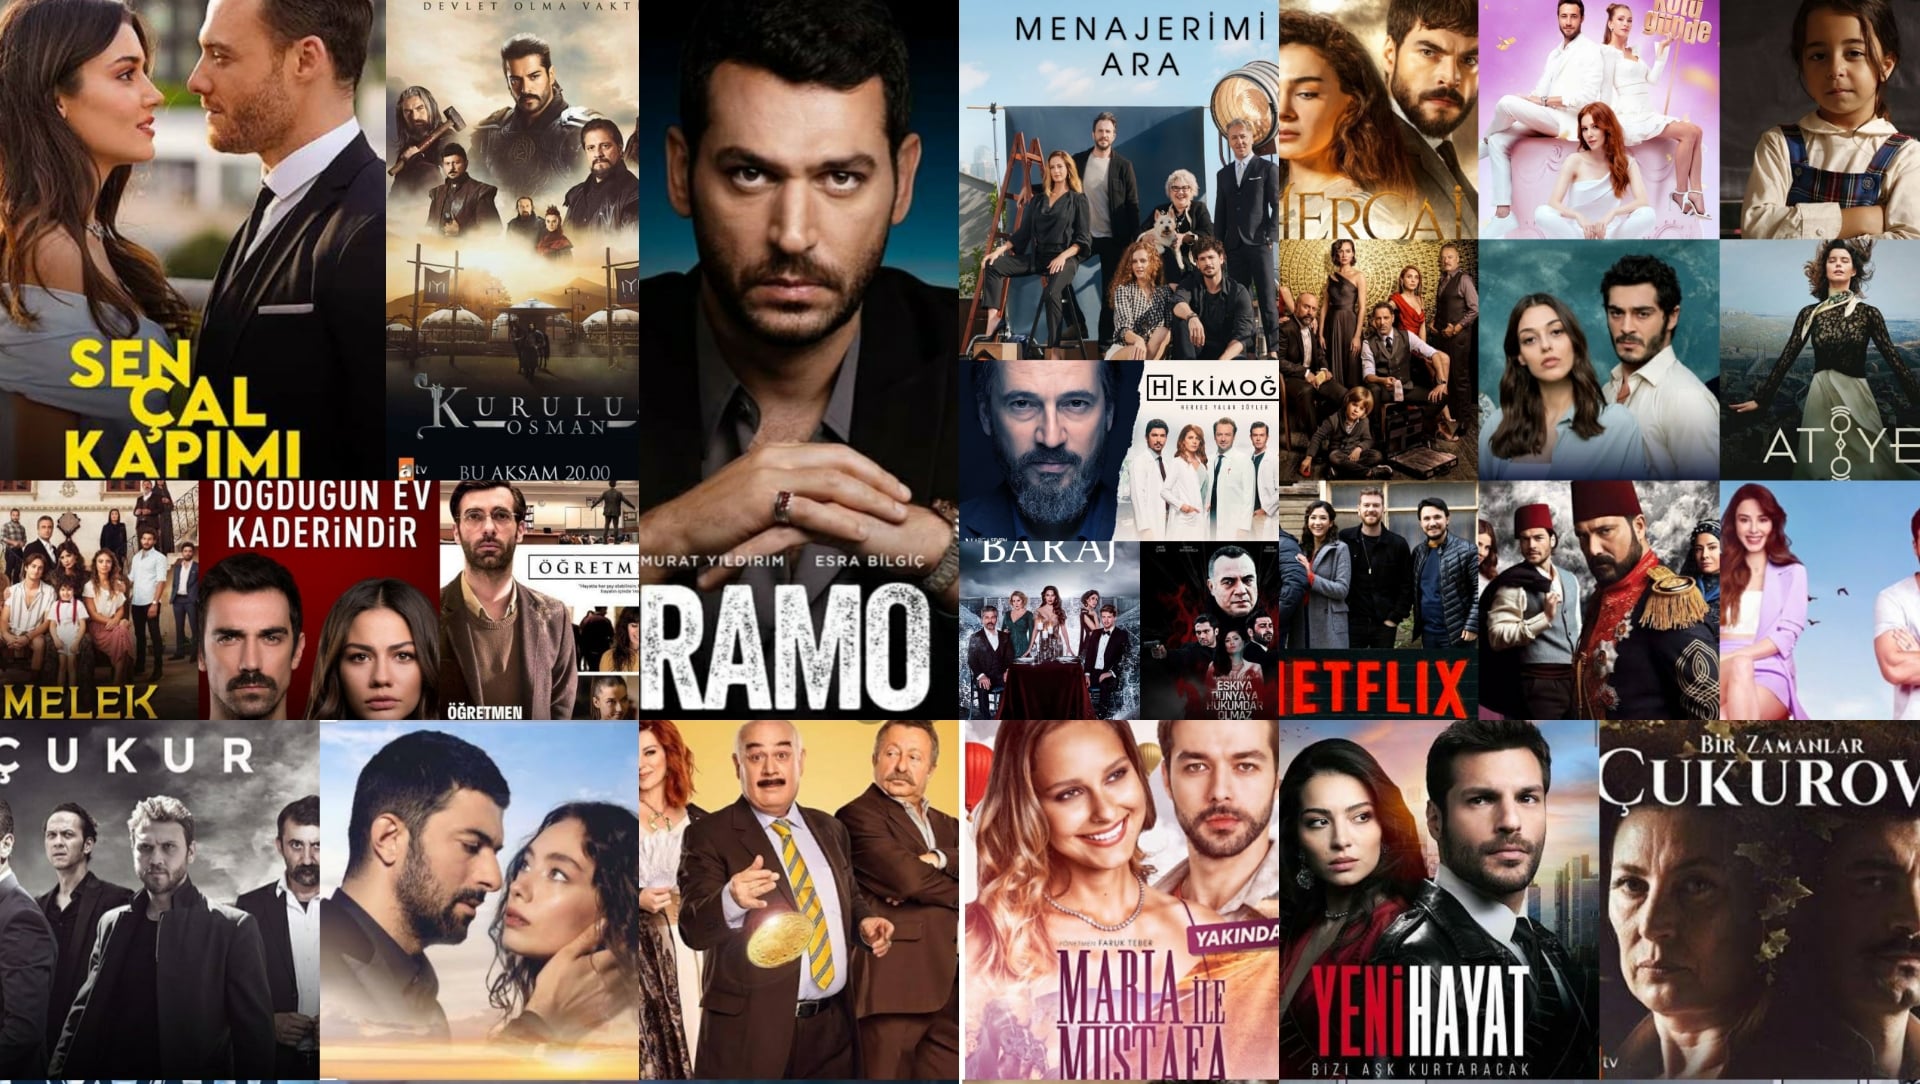 المسلسلات تذر على تركيا 600 مليون دولار